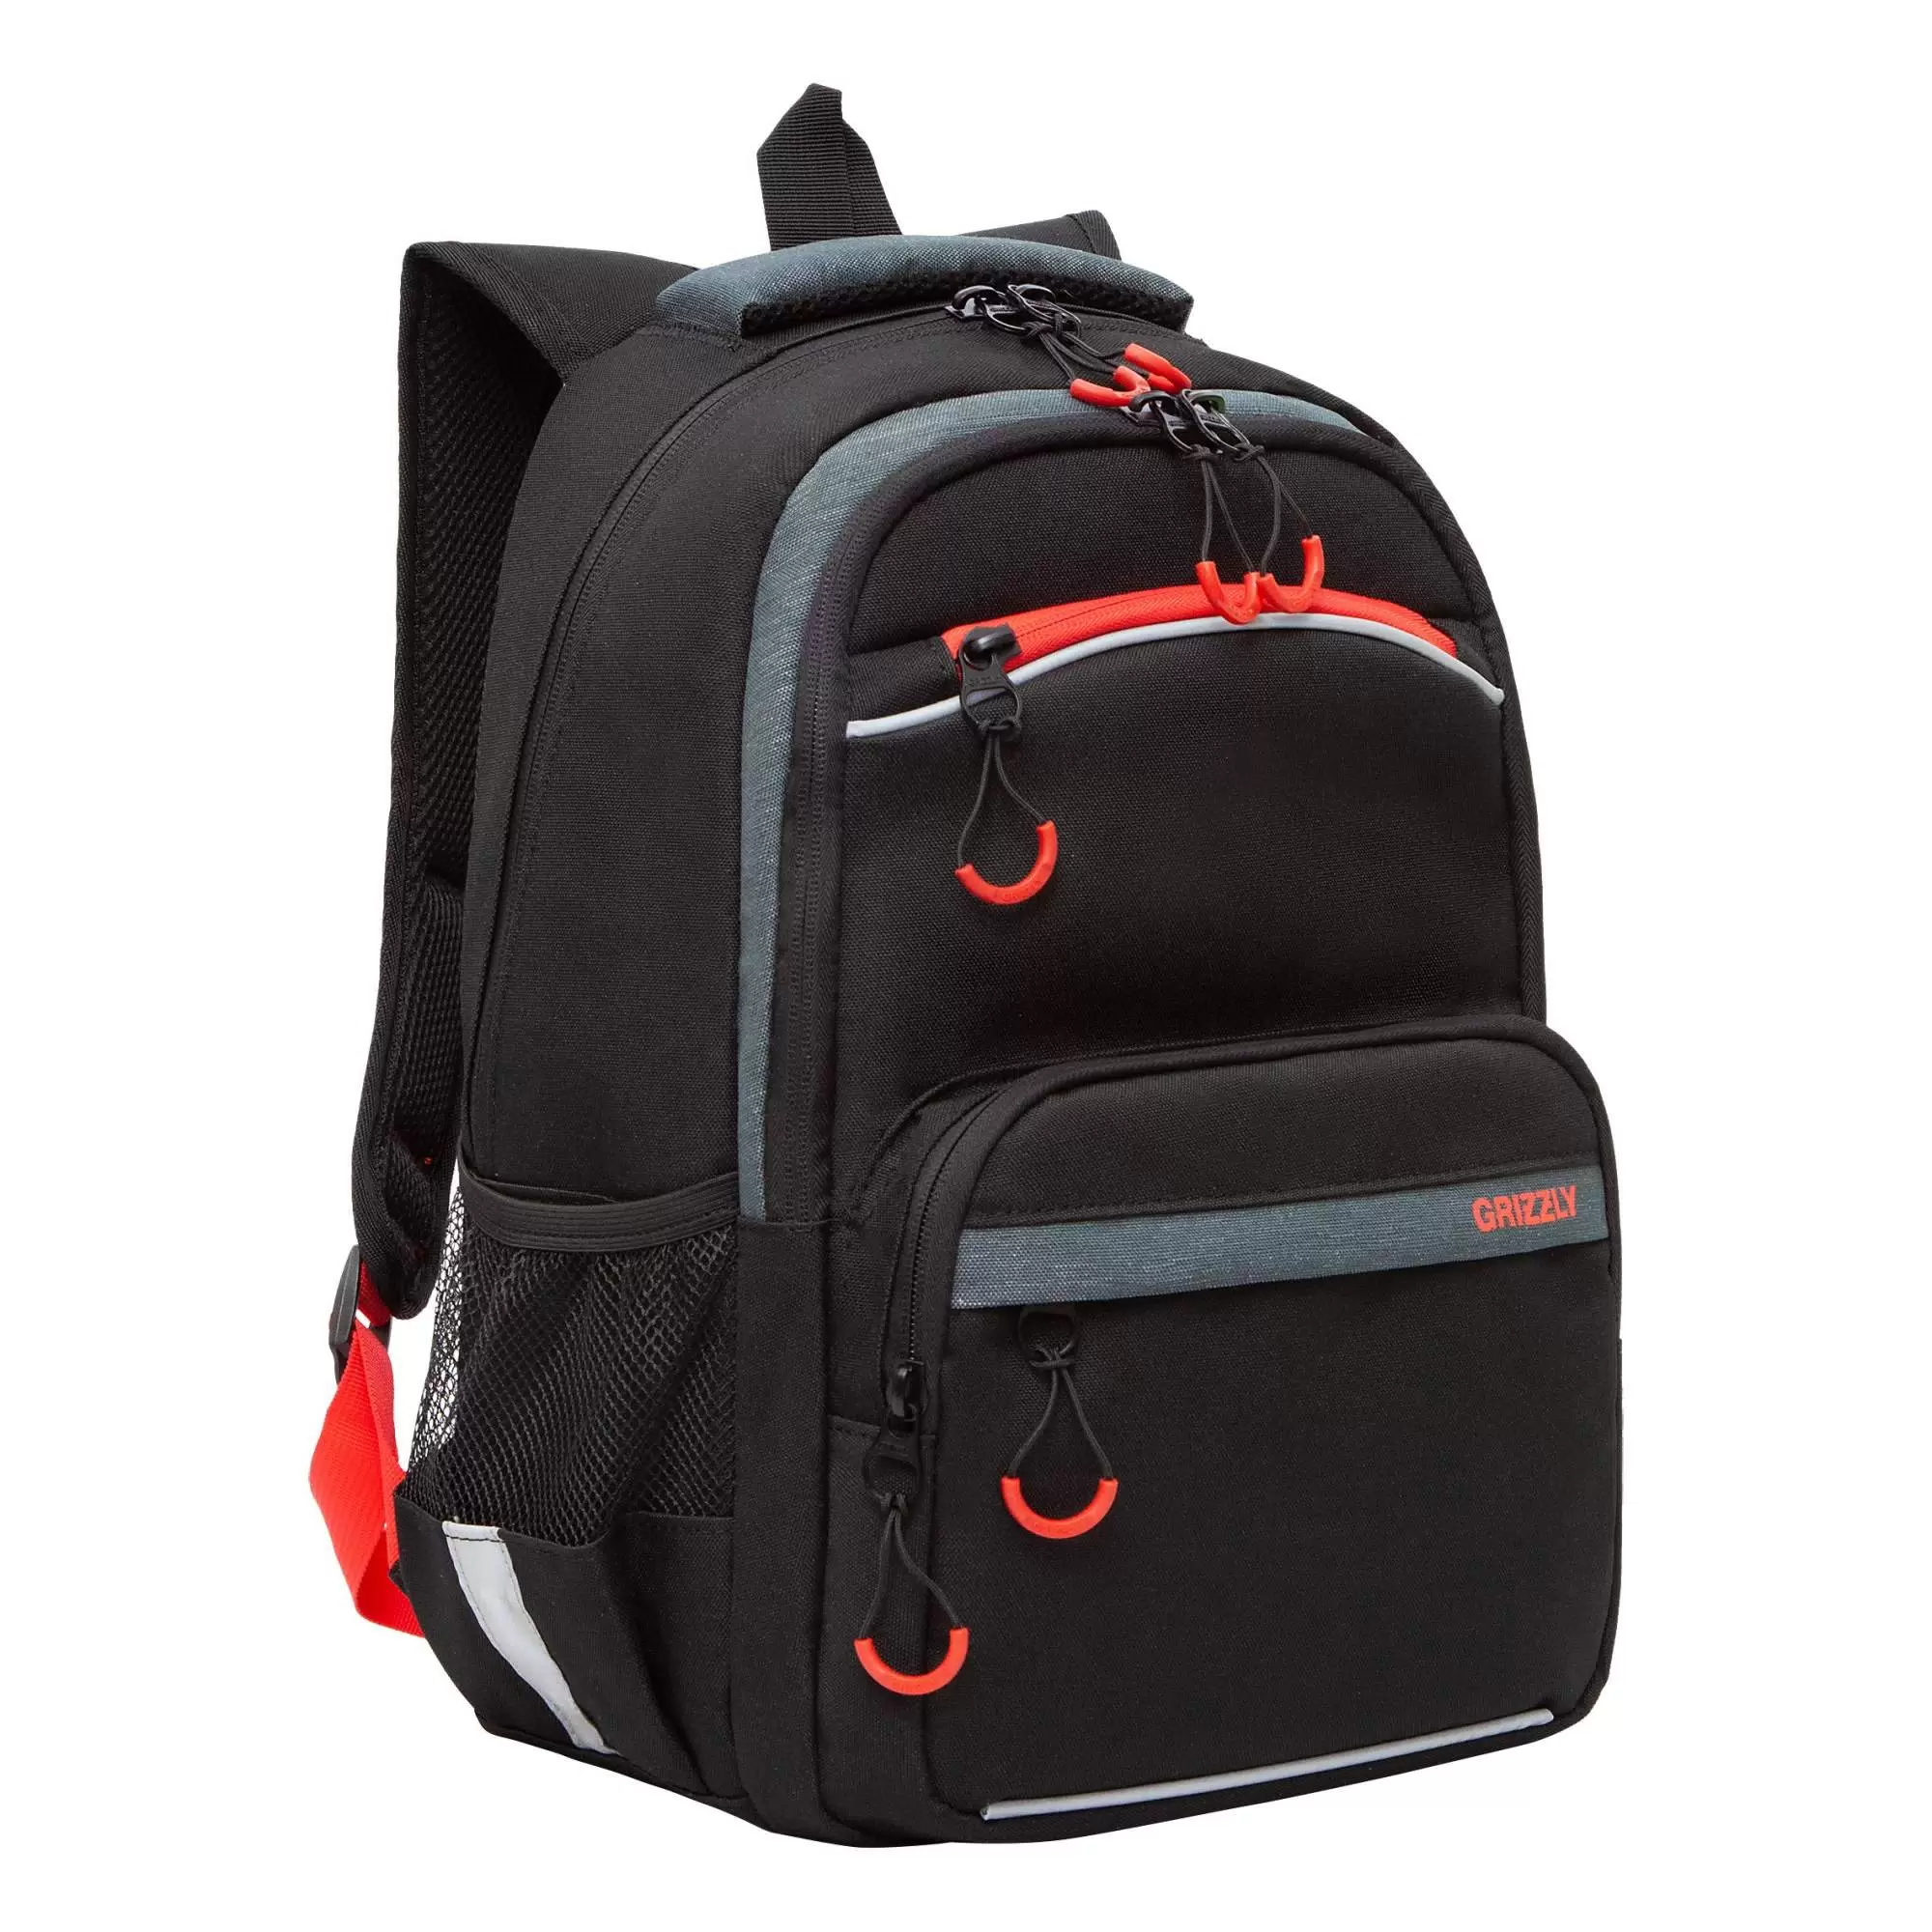 Рюкзак школьный с карманом для ноутбука 13", анатомической спинкой, для мальчика RB-254-4/1